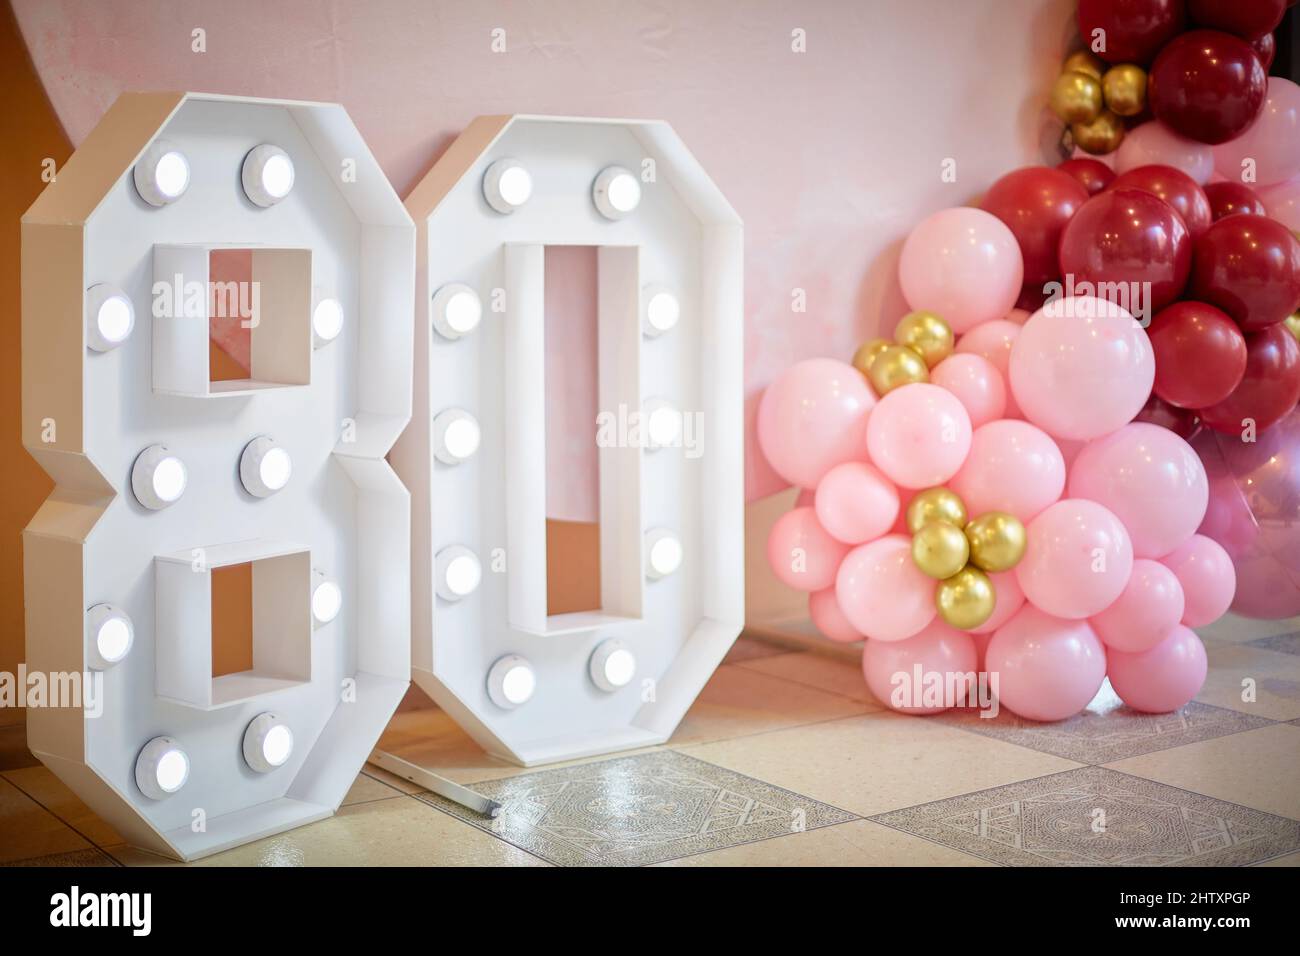 Cumpleaños 50 diseño de vector de globo. decoración de eventos de cumpleaños  y aniversario con 50 globos.